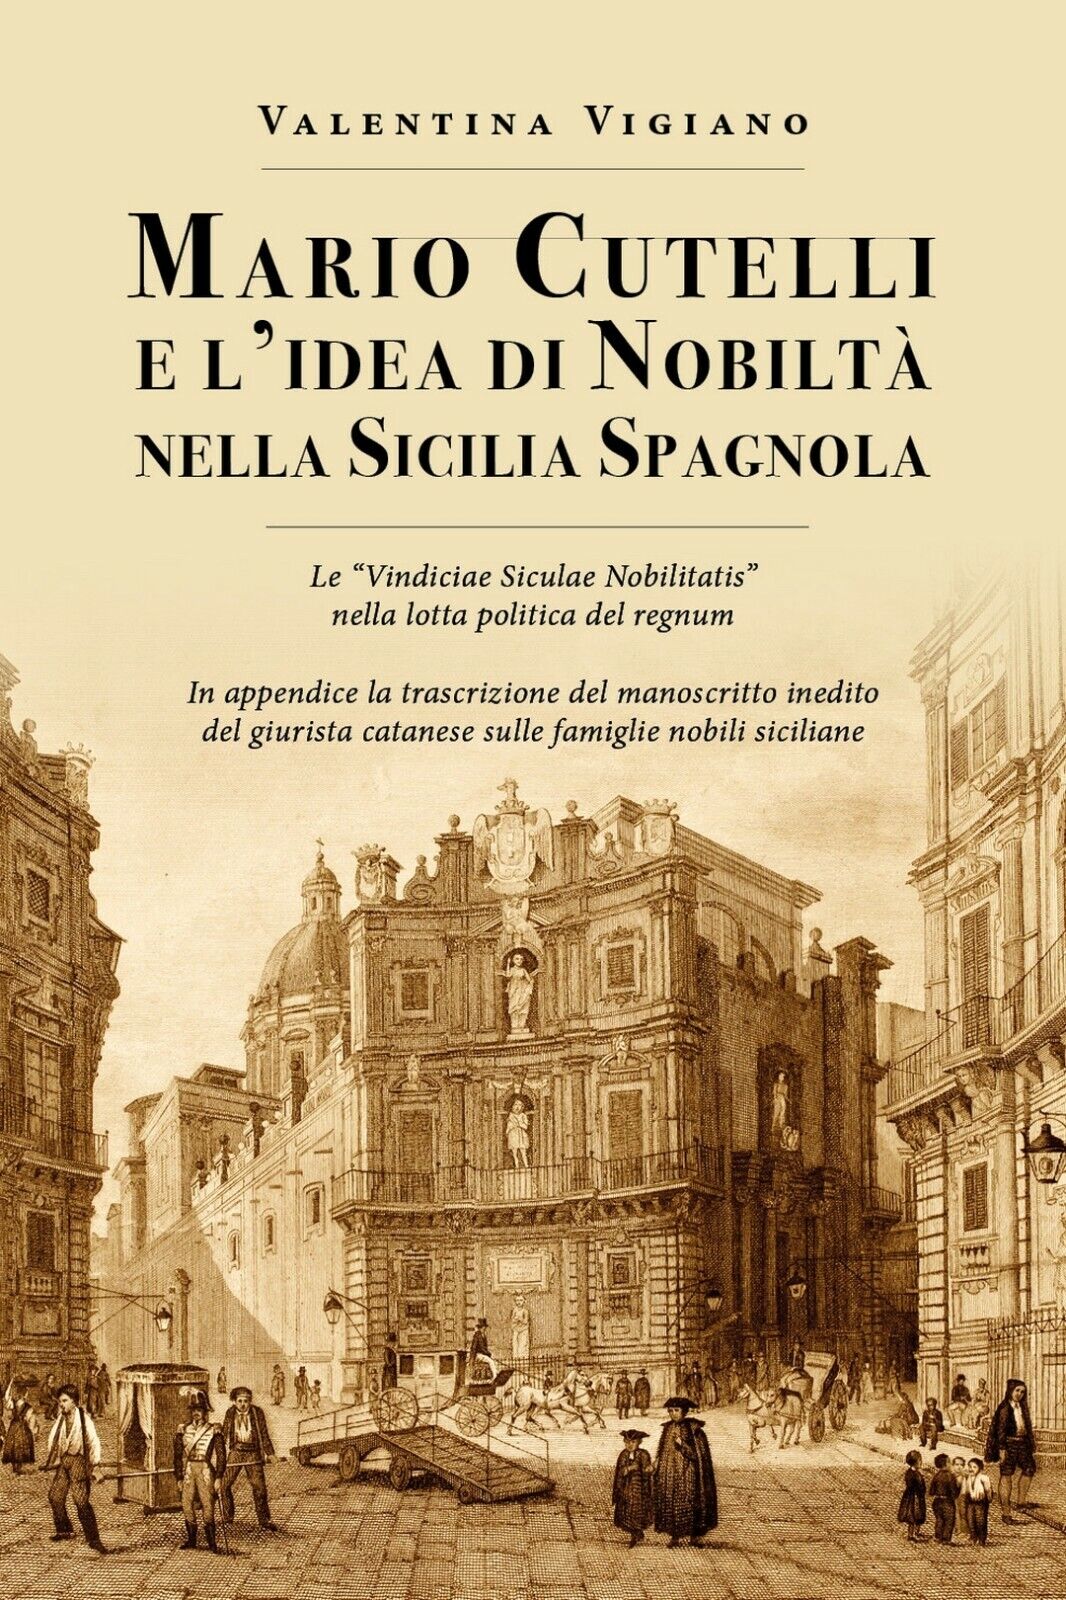 Mario Cutelli e L'idea di nobilt? nella Sicilia spagnola  di Valentina Vigiano,  libro usato